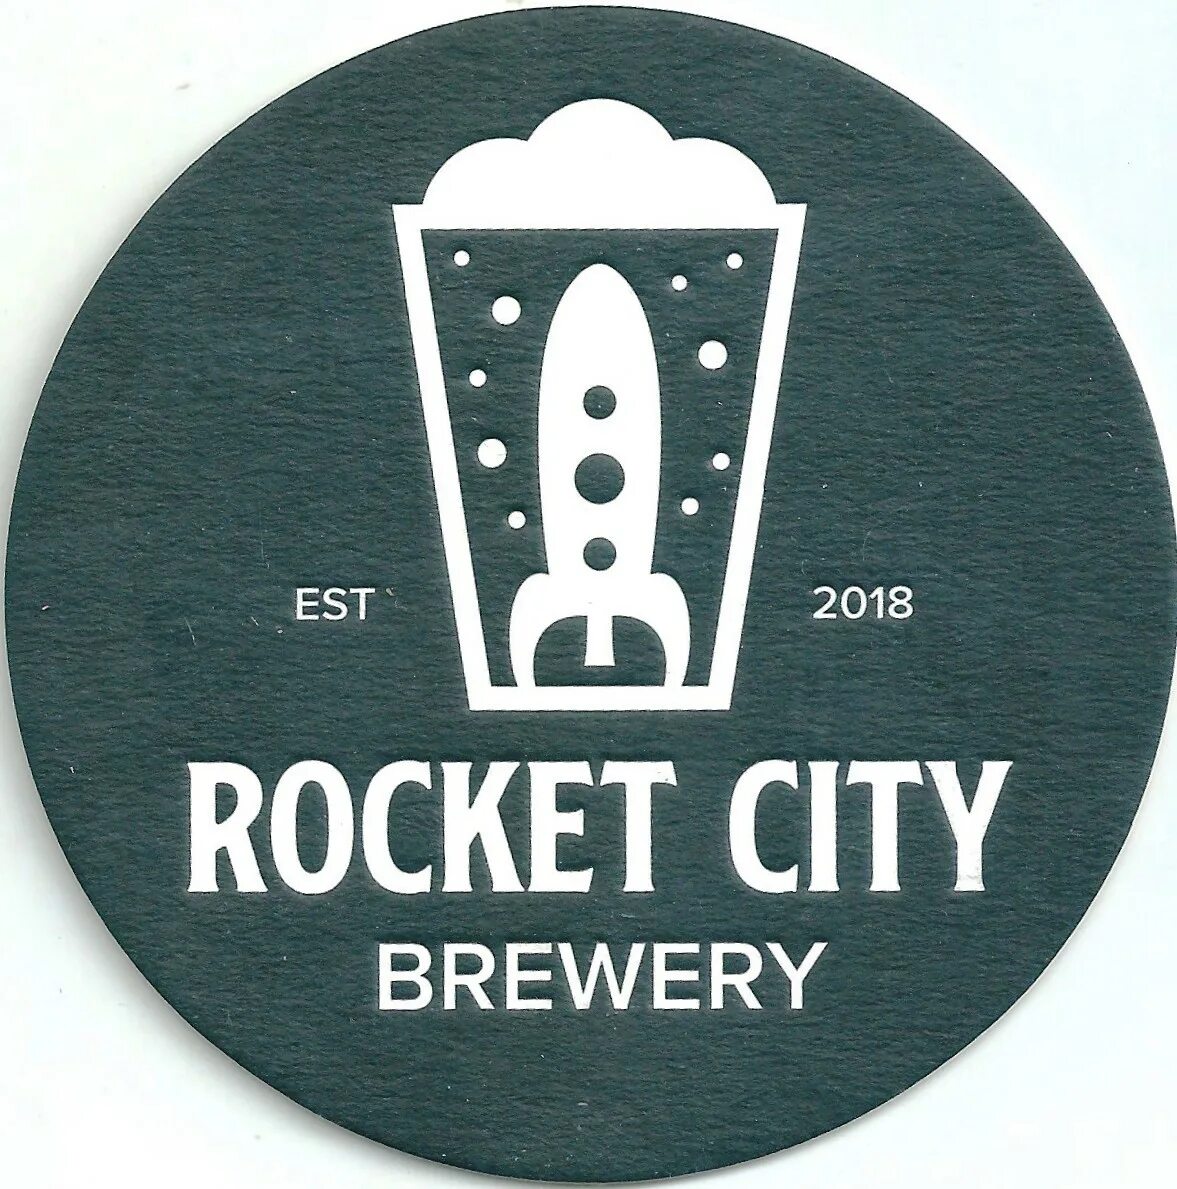 City rocket. Rocket City Королев пивоварня. Пиво Rocket Brewery. Крафтовые пивоварни логотип. Рокет Сити пивоварня логотипы.